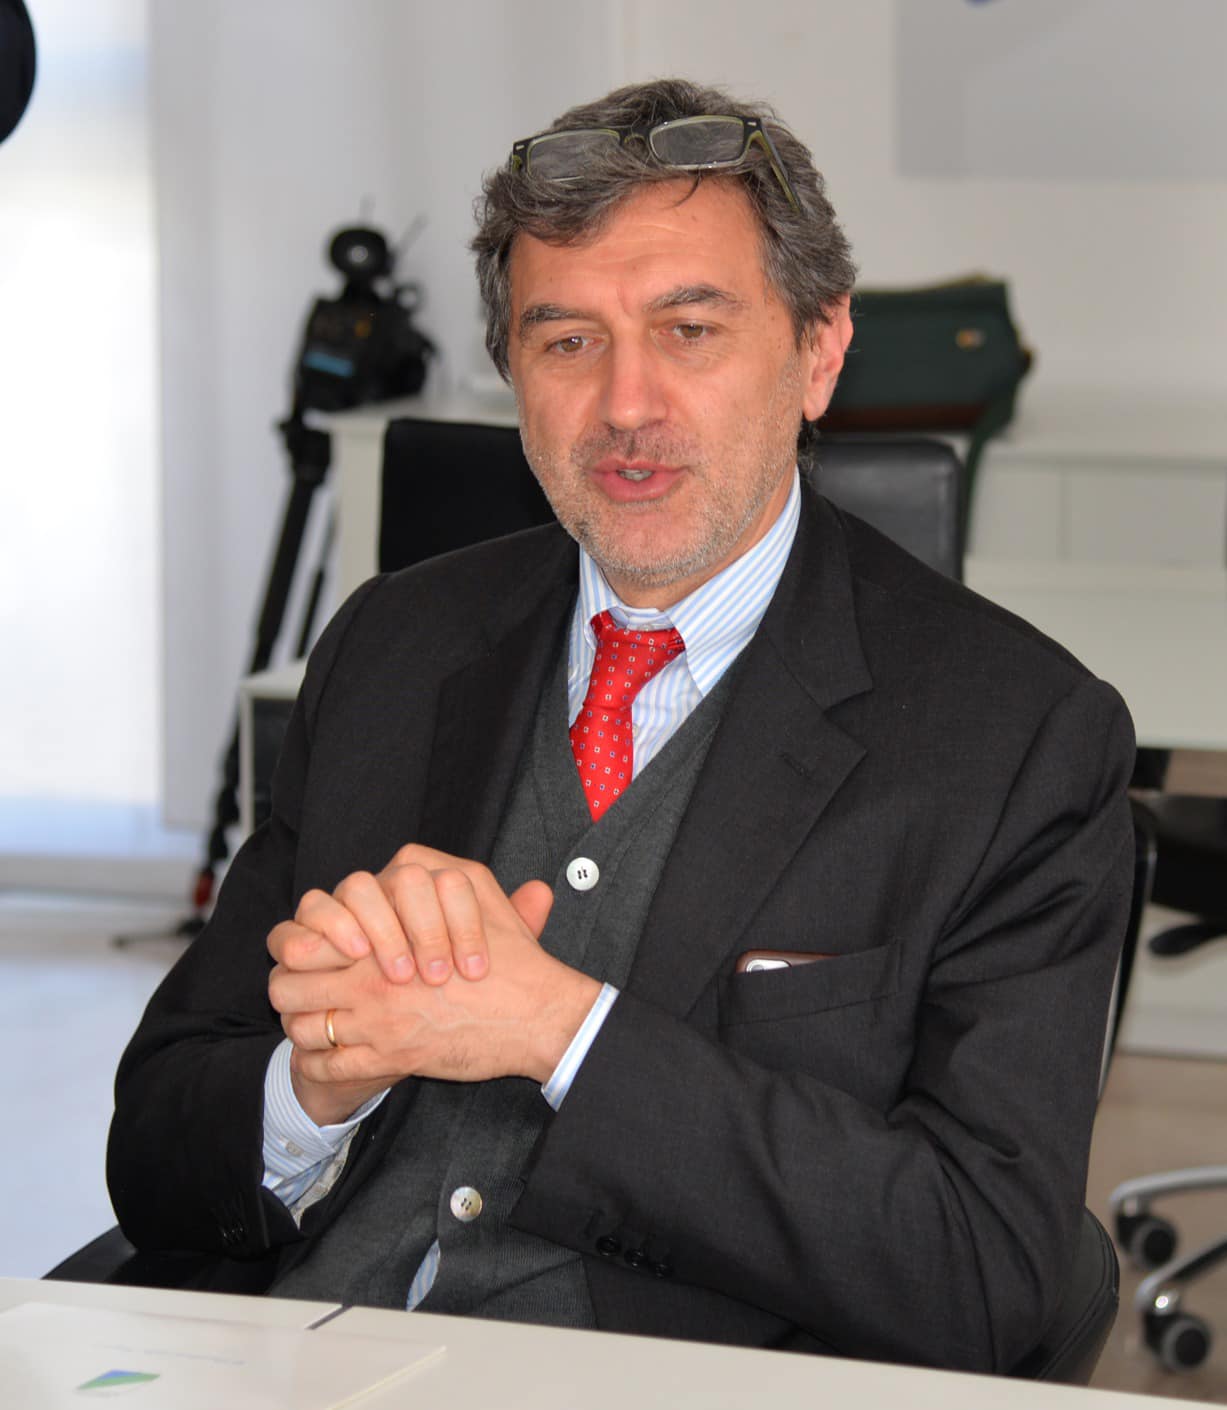 Programmazione 21-27, il presidente d'Abruzzo Marsilio: “Tenere fermi i fondi è un delitto”